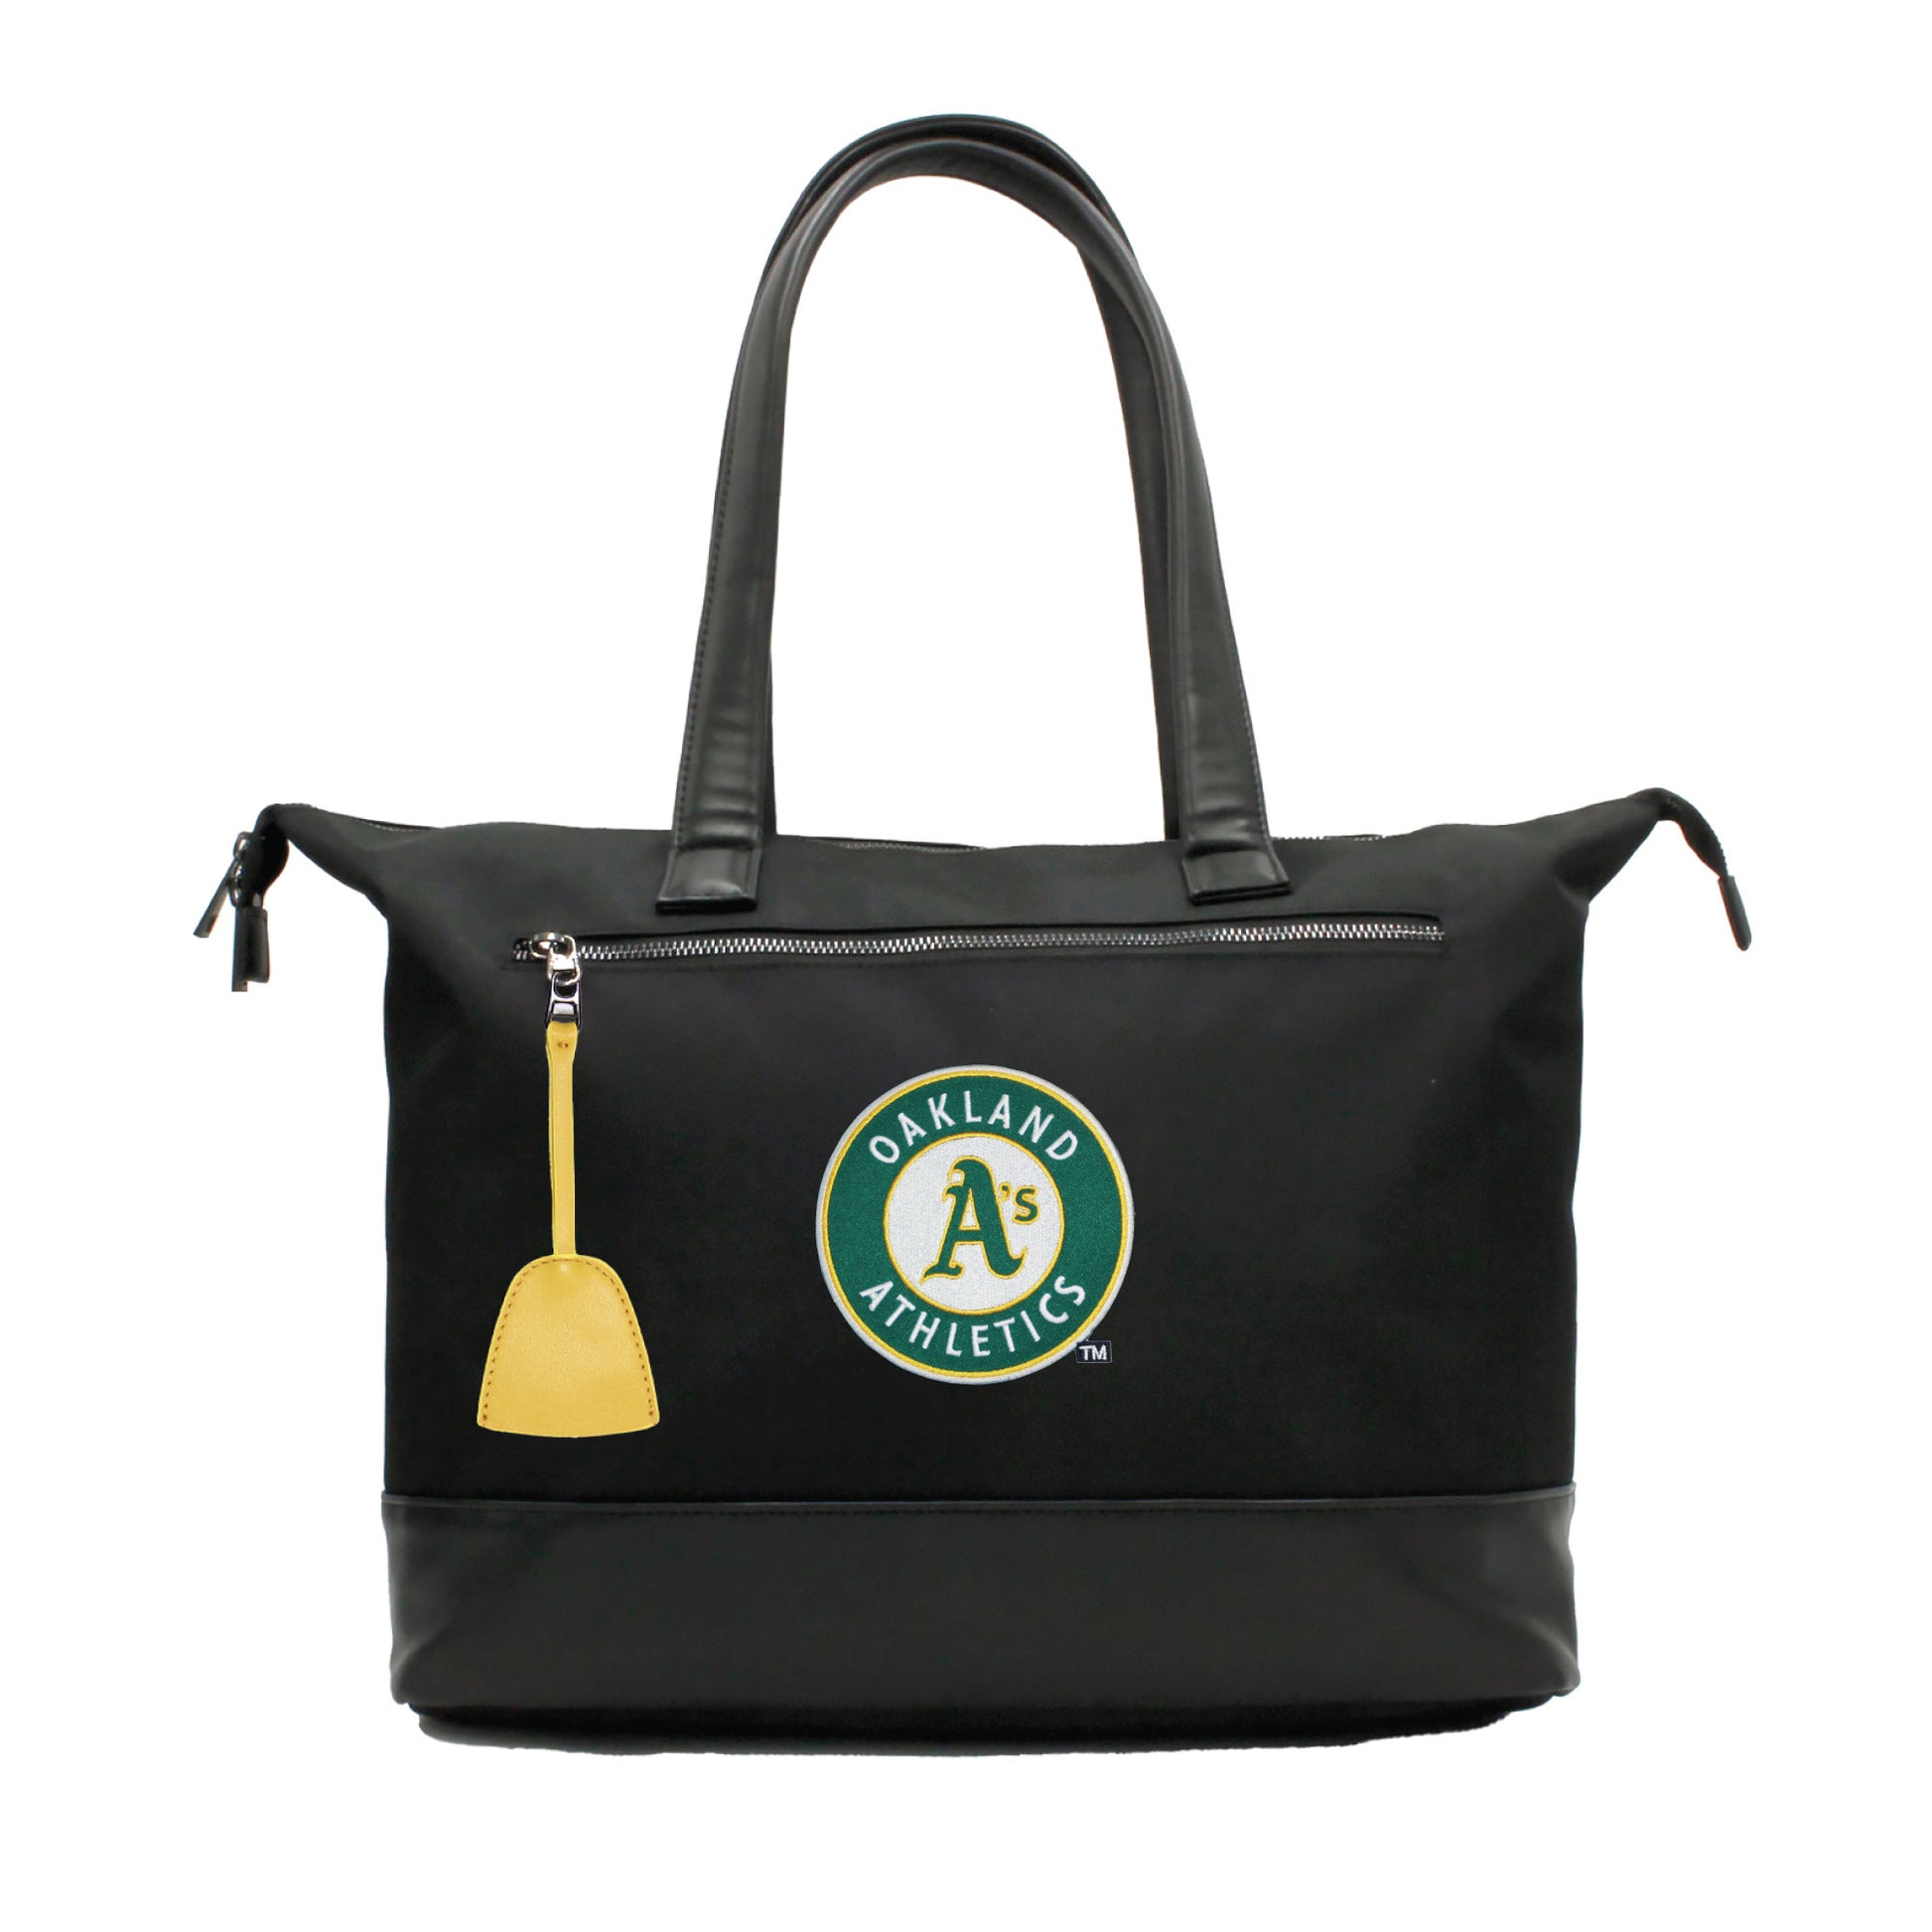 Oakland Athletics Premium Laptop Tote Bag